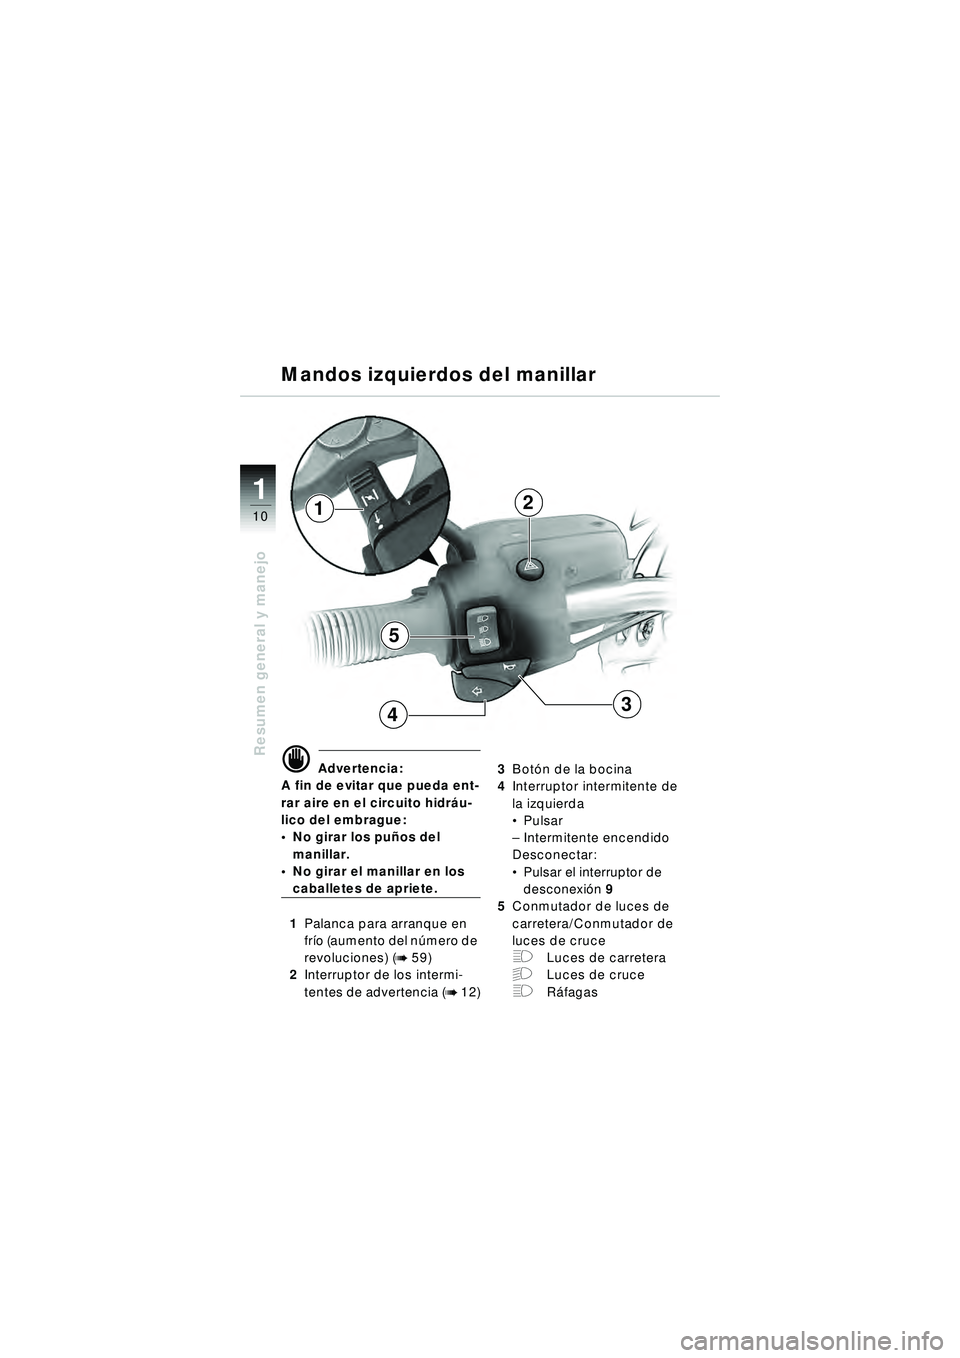 BMW MOTORRAD R 1150 R 2002  Manual de instrucciones (in Spanish) 1
Resumen general y manejo
10
5
4
2
3
1
\f Advertencia:
A fin de evitar que pueda ent-
rar aire en el circuito hidr áu-
lico del embrague: 
 No girar los pu ños del 
manillar.
 No girar el manilla